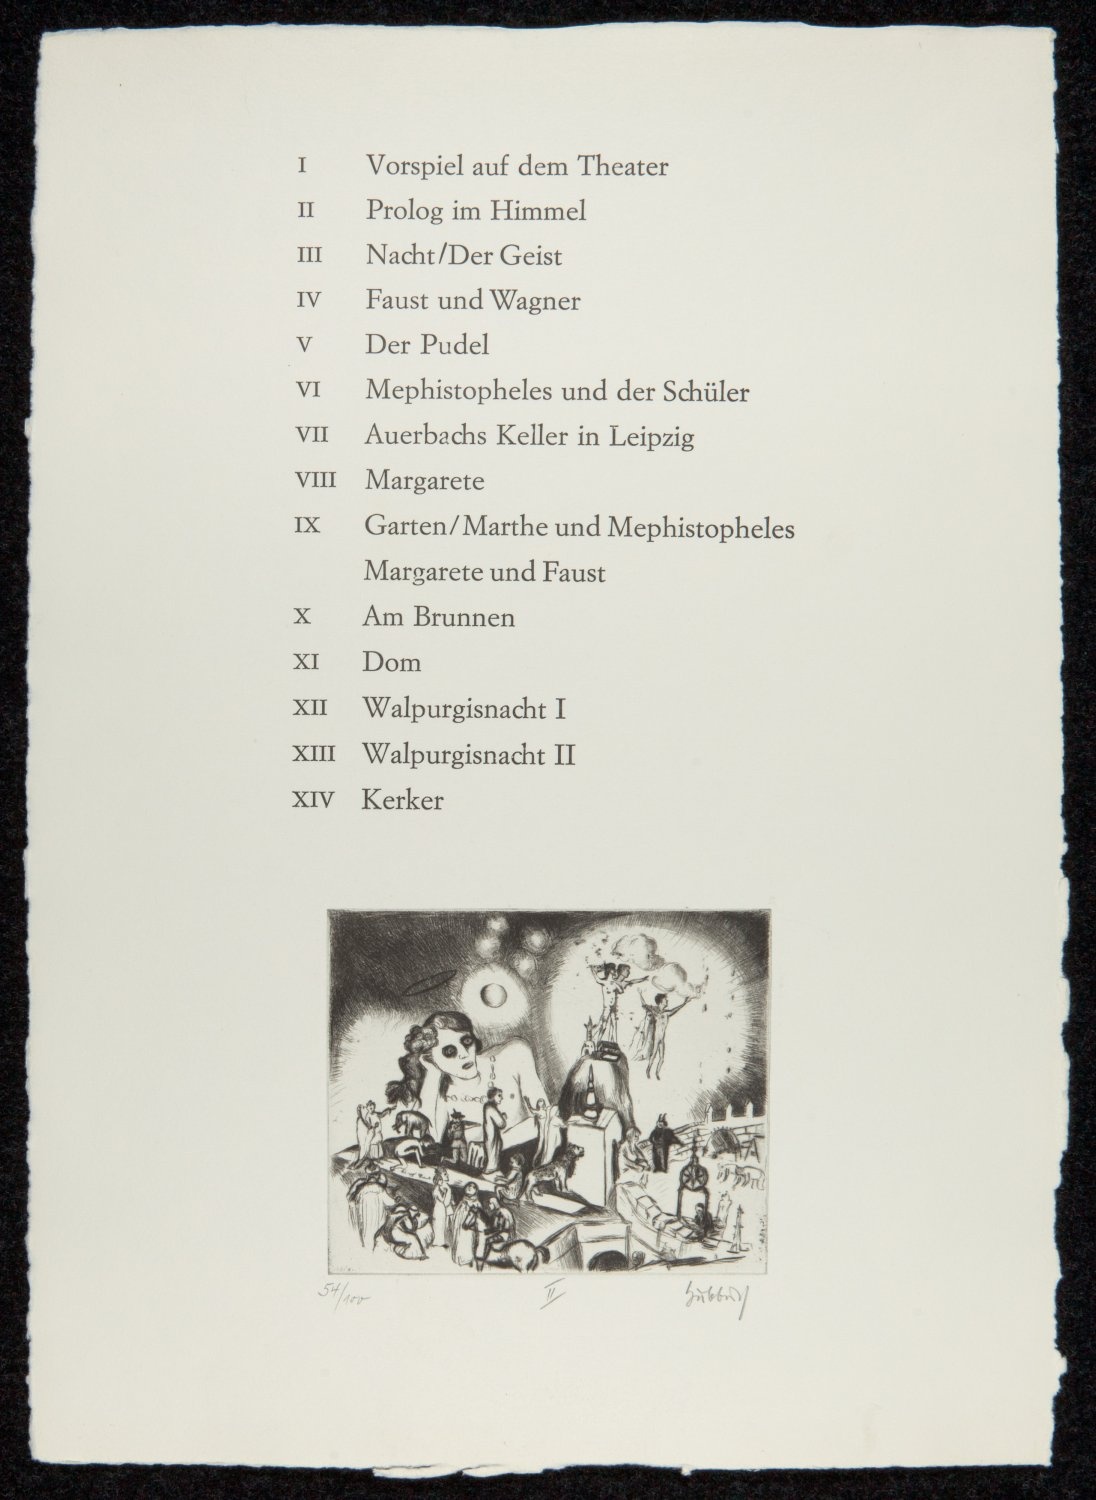 Prolog im Himmel. Blatt II, Mappe mit 14 Radierungen (auf 13 Blättern) (Freies Deutsches Hochstift / Frankfurter Goethe-Museum © Karl Hubbuch Stiftung, Freiburg RR-F)